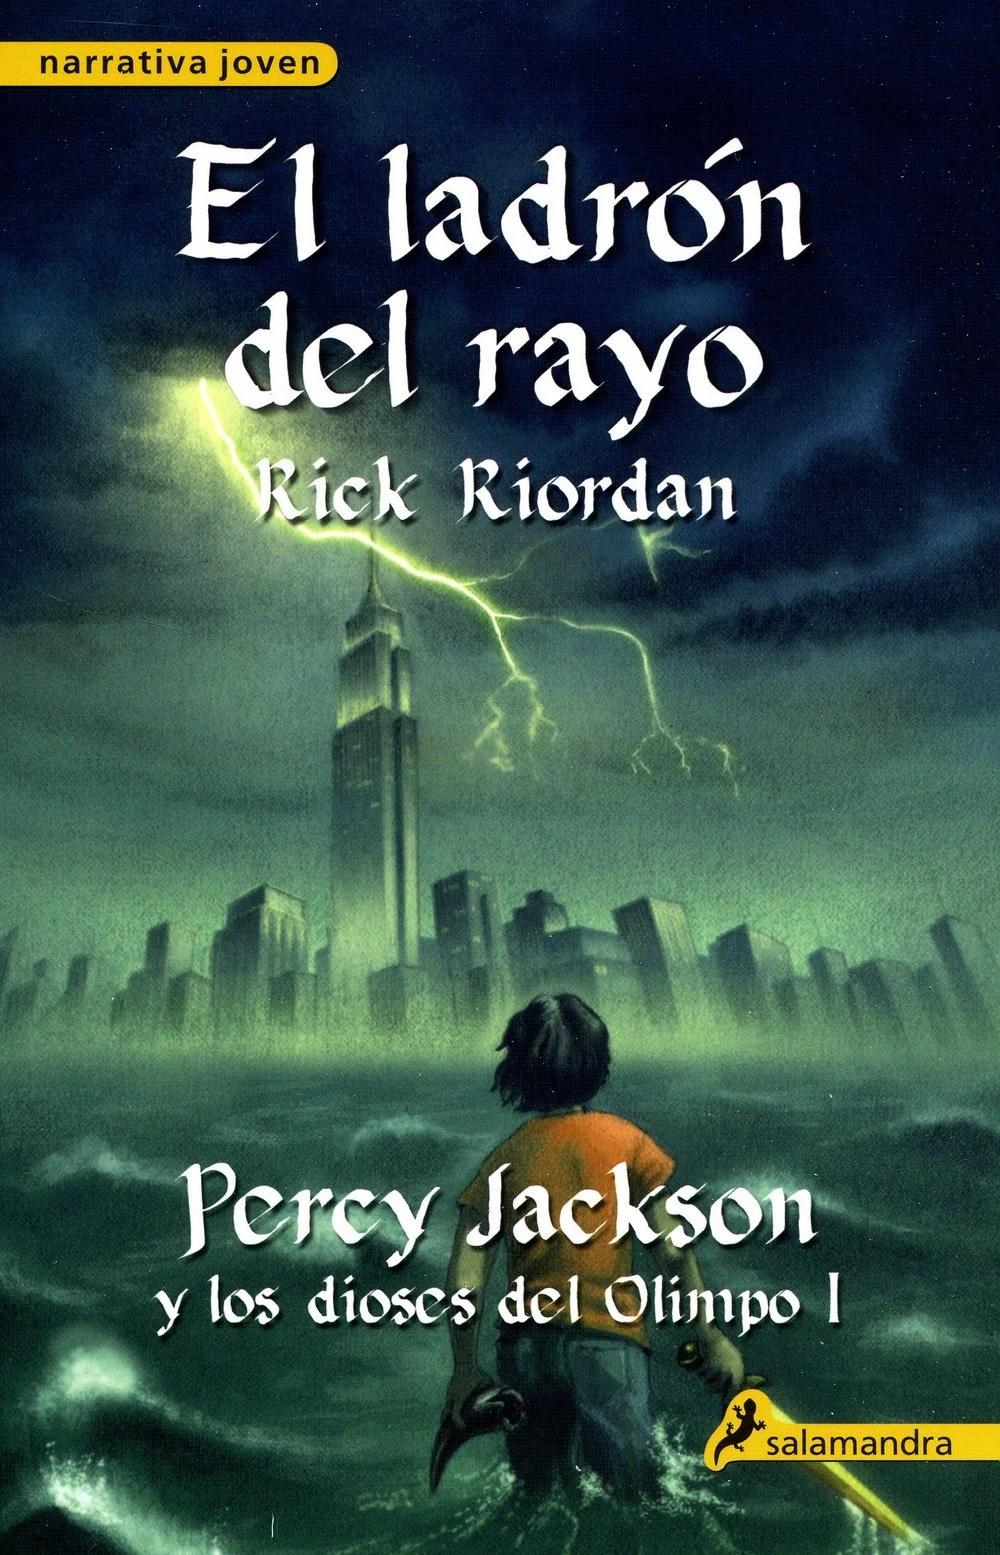 resumen de percy jackson y el ladrón del rayo libro - Qué pasa en el libro de Percy Jackson